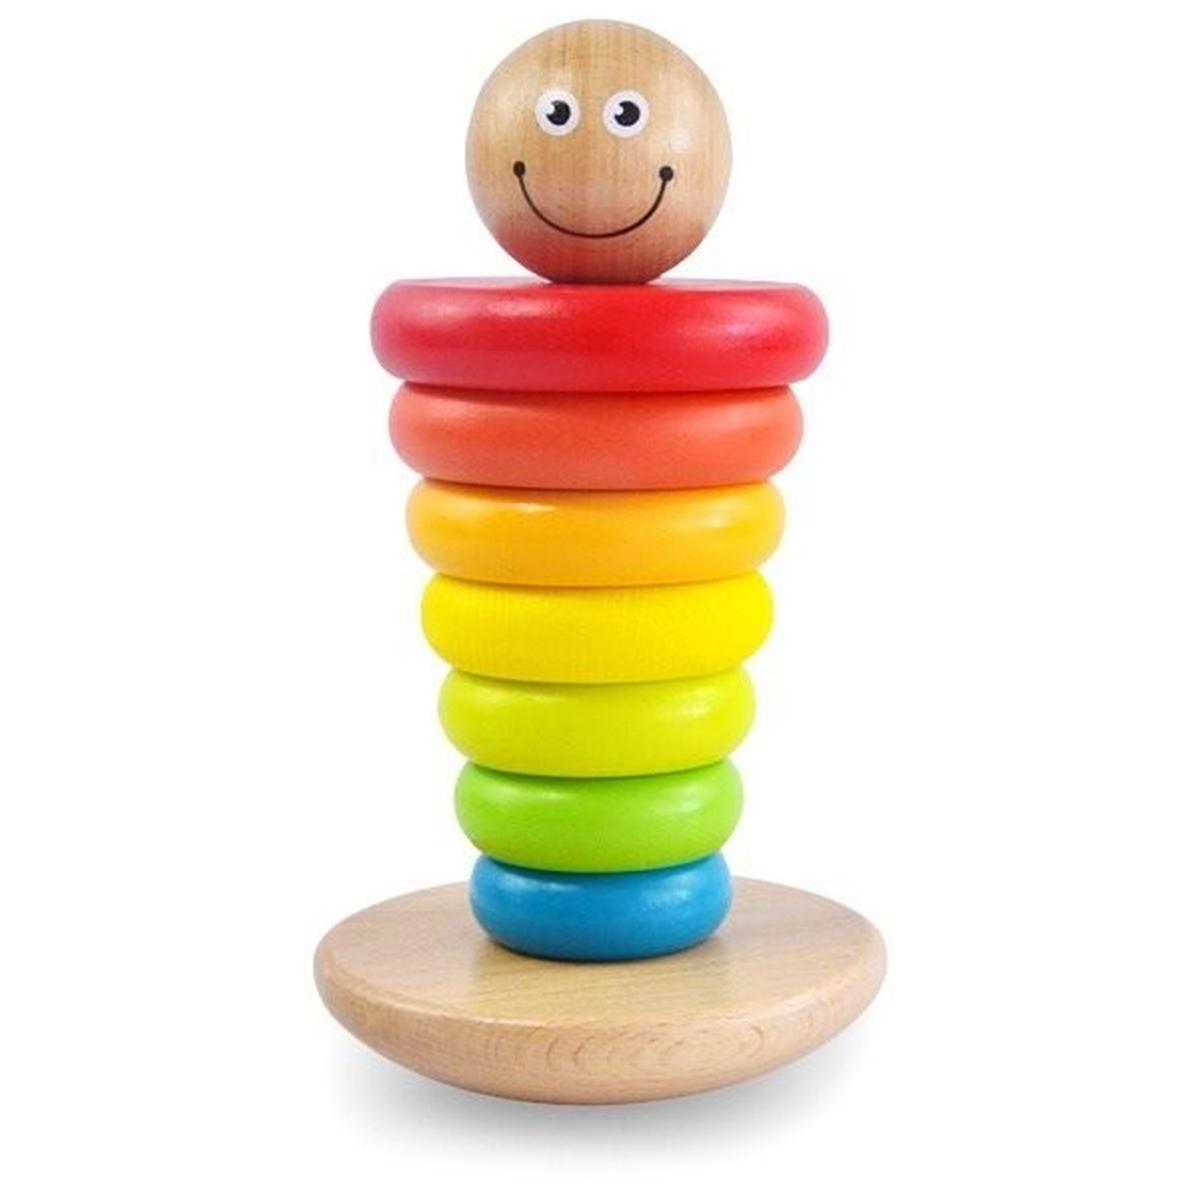 Ofertas, chollos, descuentos y cupones de ToysRus juguete Pirámide de aros encajables de madera Smiley